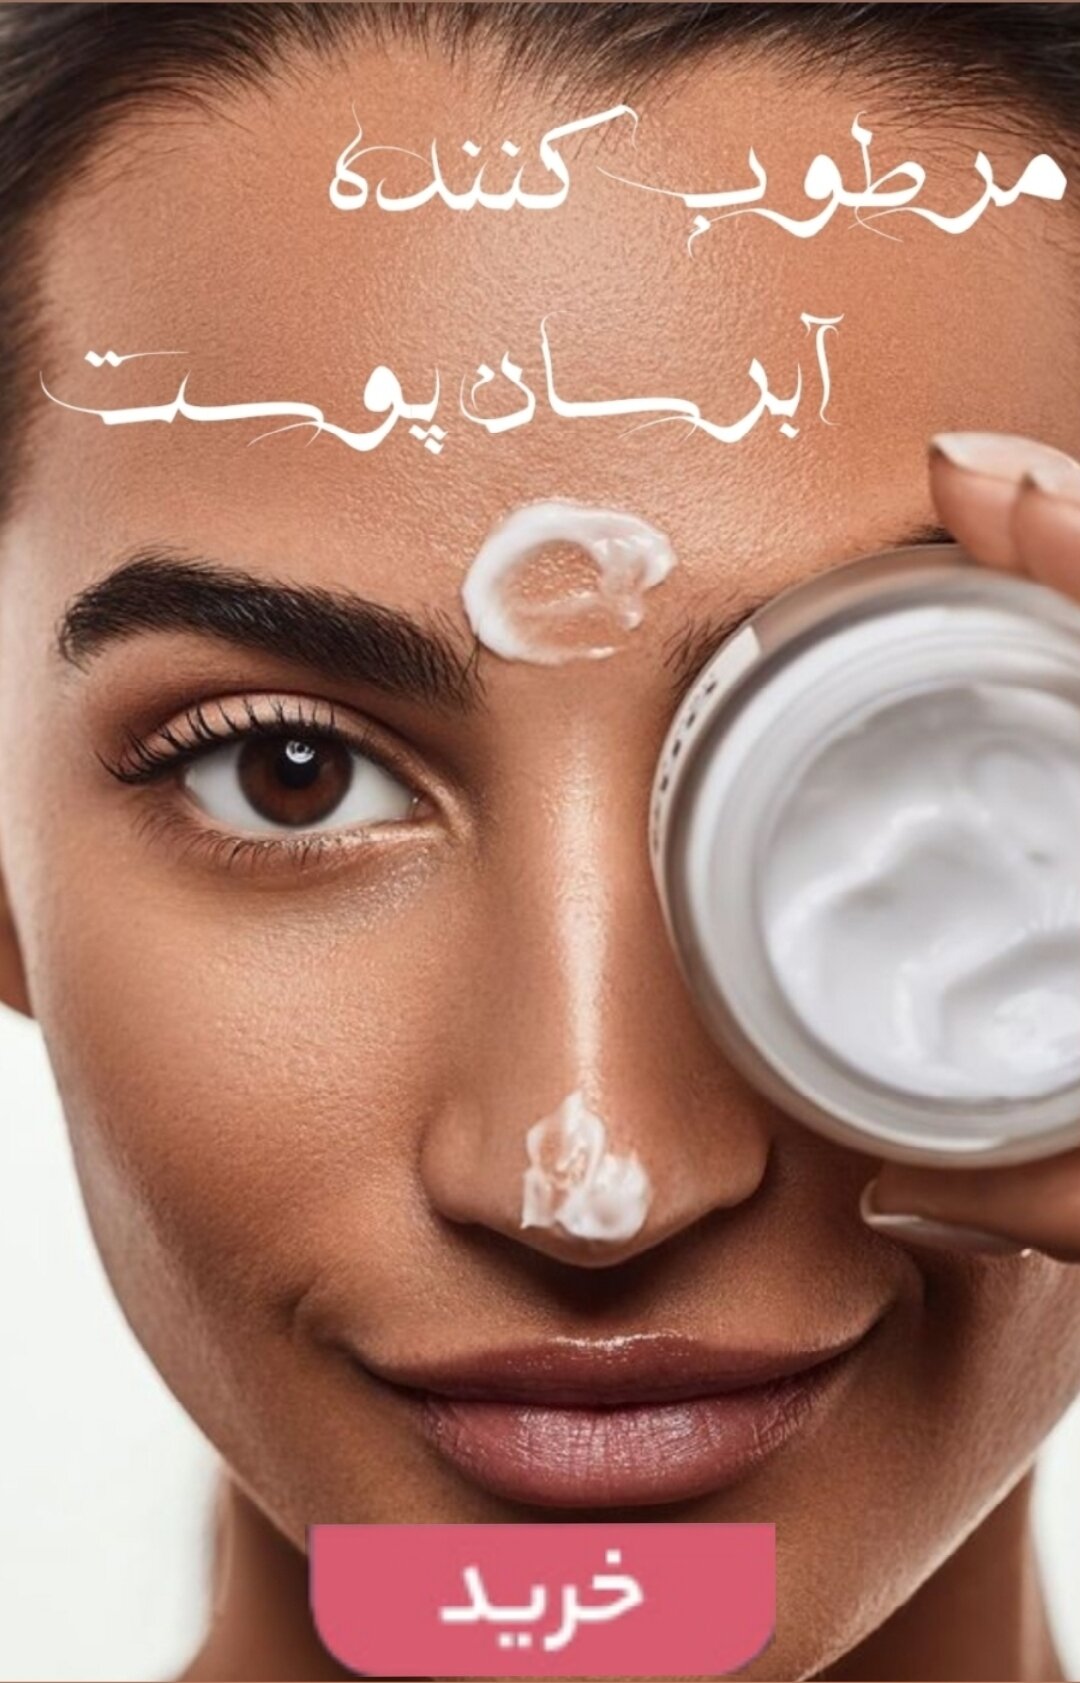 خرید آنلاین مرطوب کننده و آبرسان های پوستی اصلی و اورجینال-فروشگاه اینترنتی آرایشی بهداشتی آزارو در شیراز-ارسال به سراسر کشور